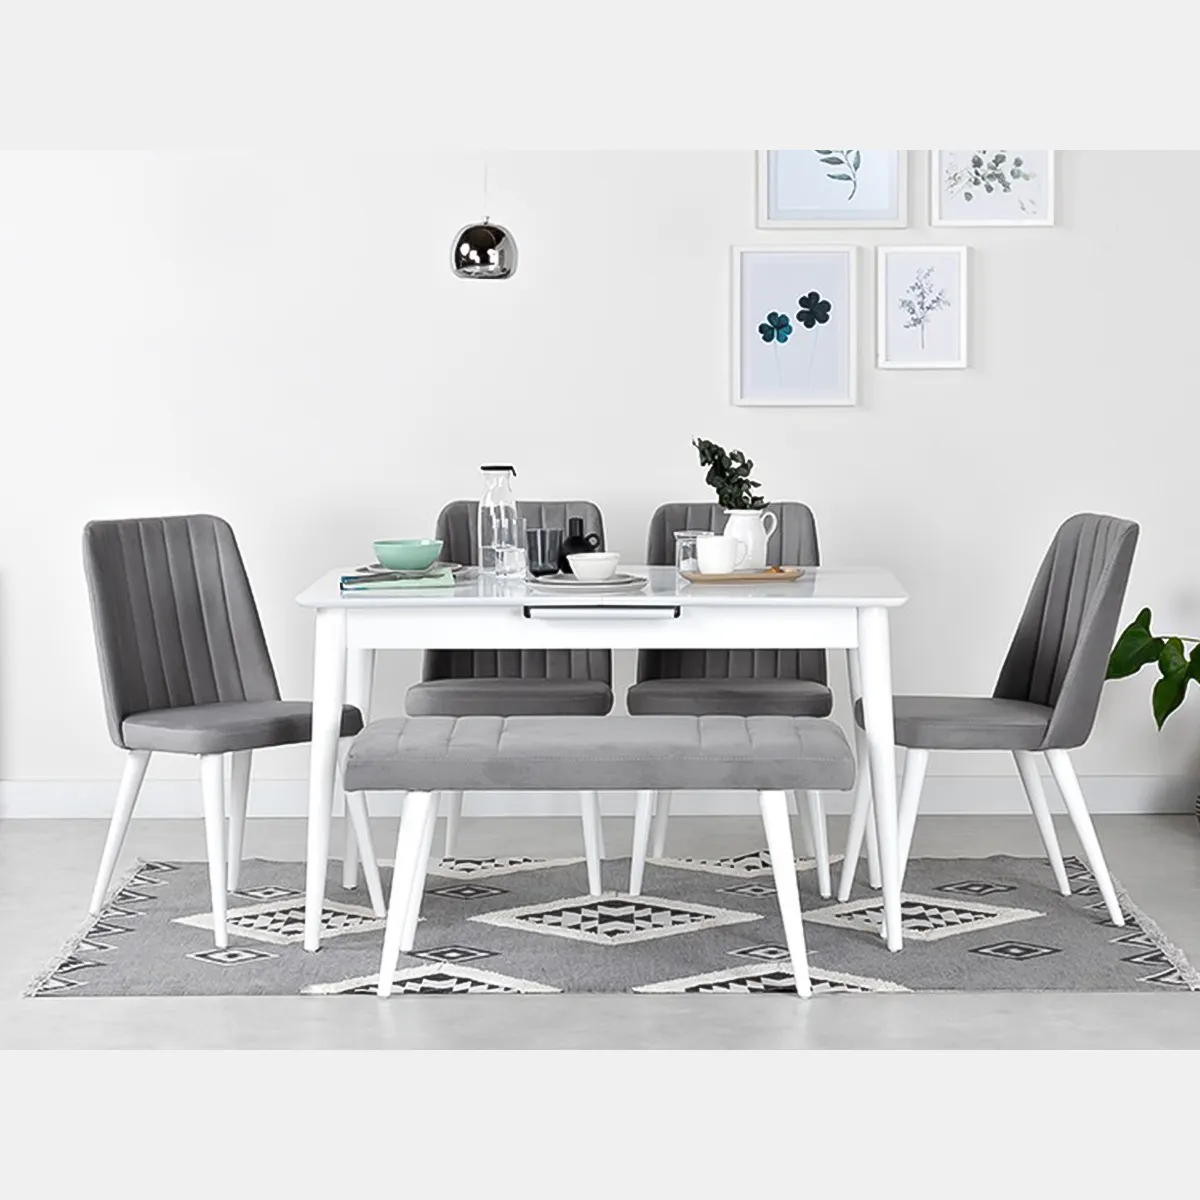 Set completo di tavolo da pranzo e 6 sedie con tessuto in pelle 100% mobili in legno massiccio ristorante hotel cucina cafe giardino UKFR